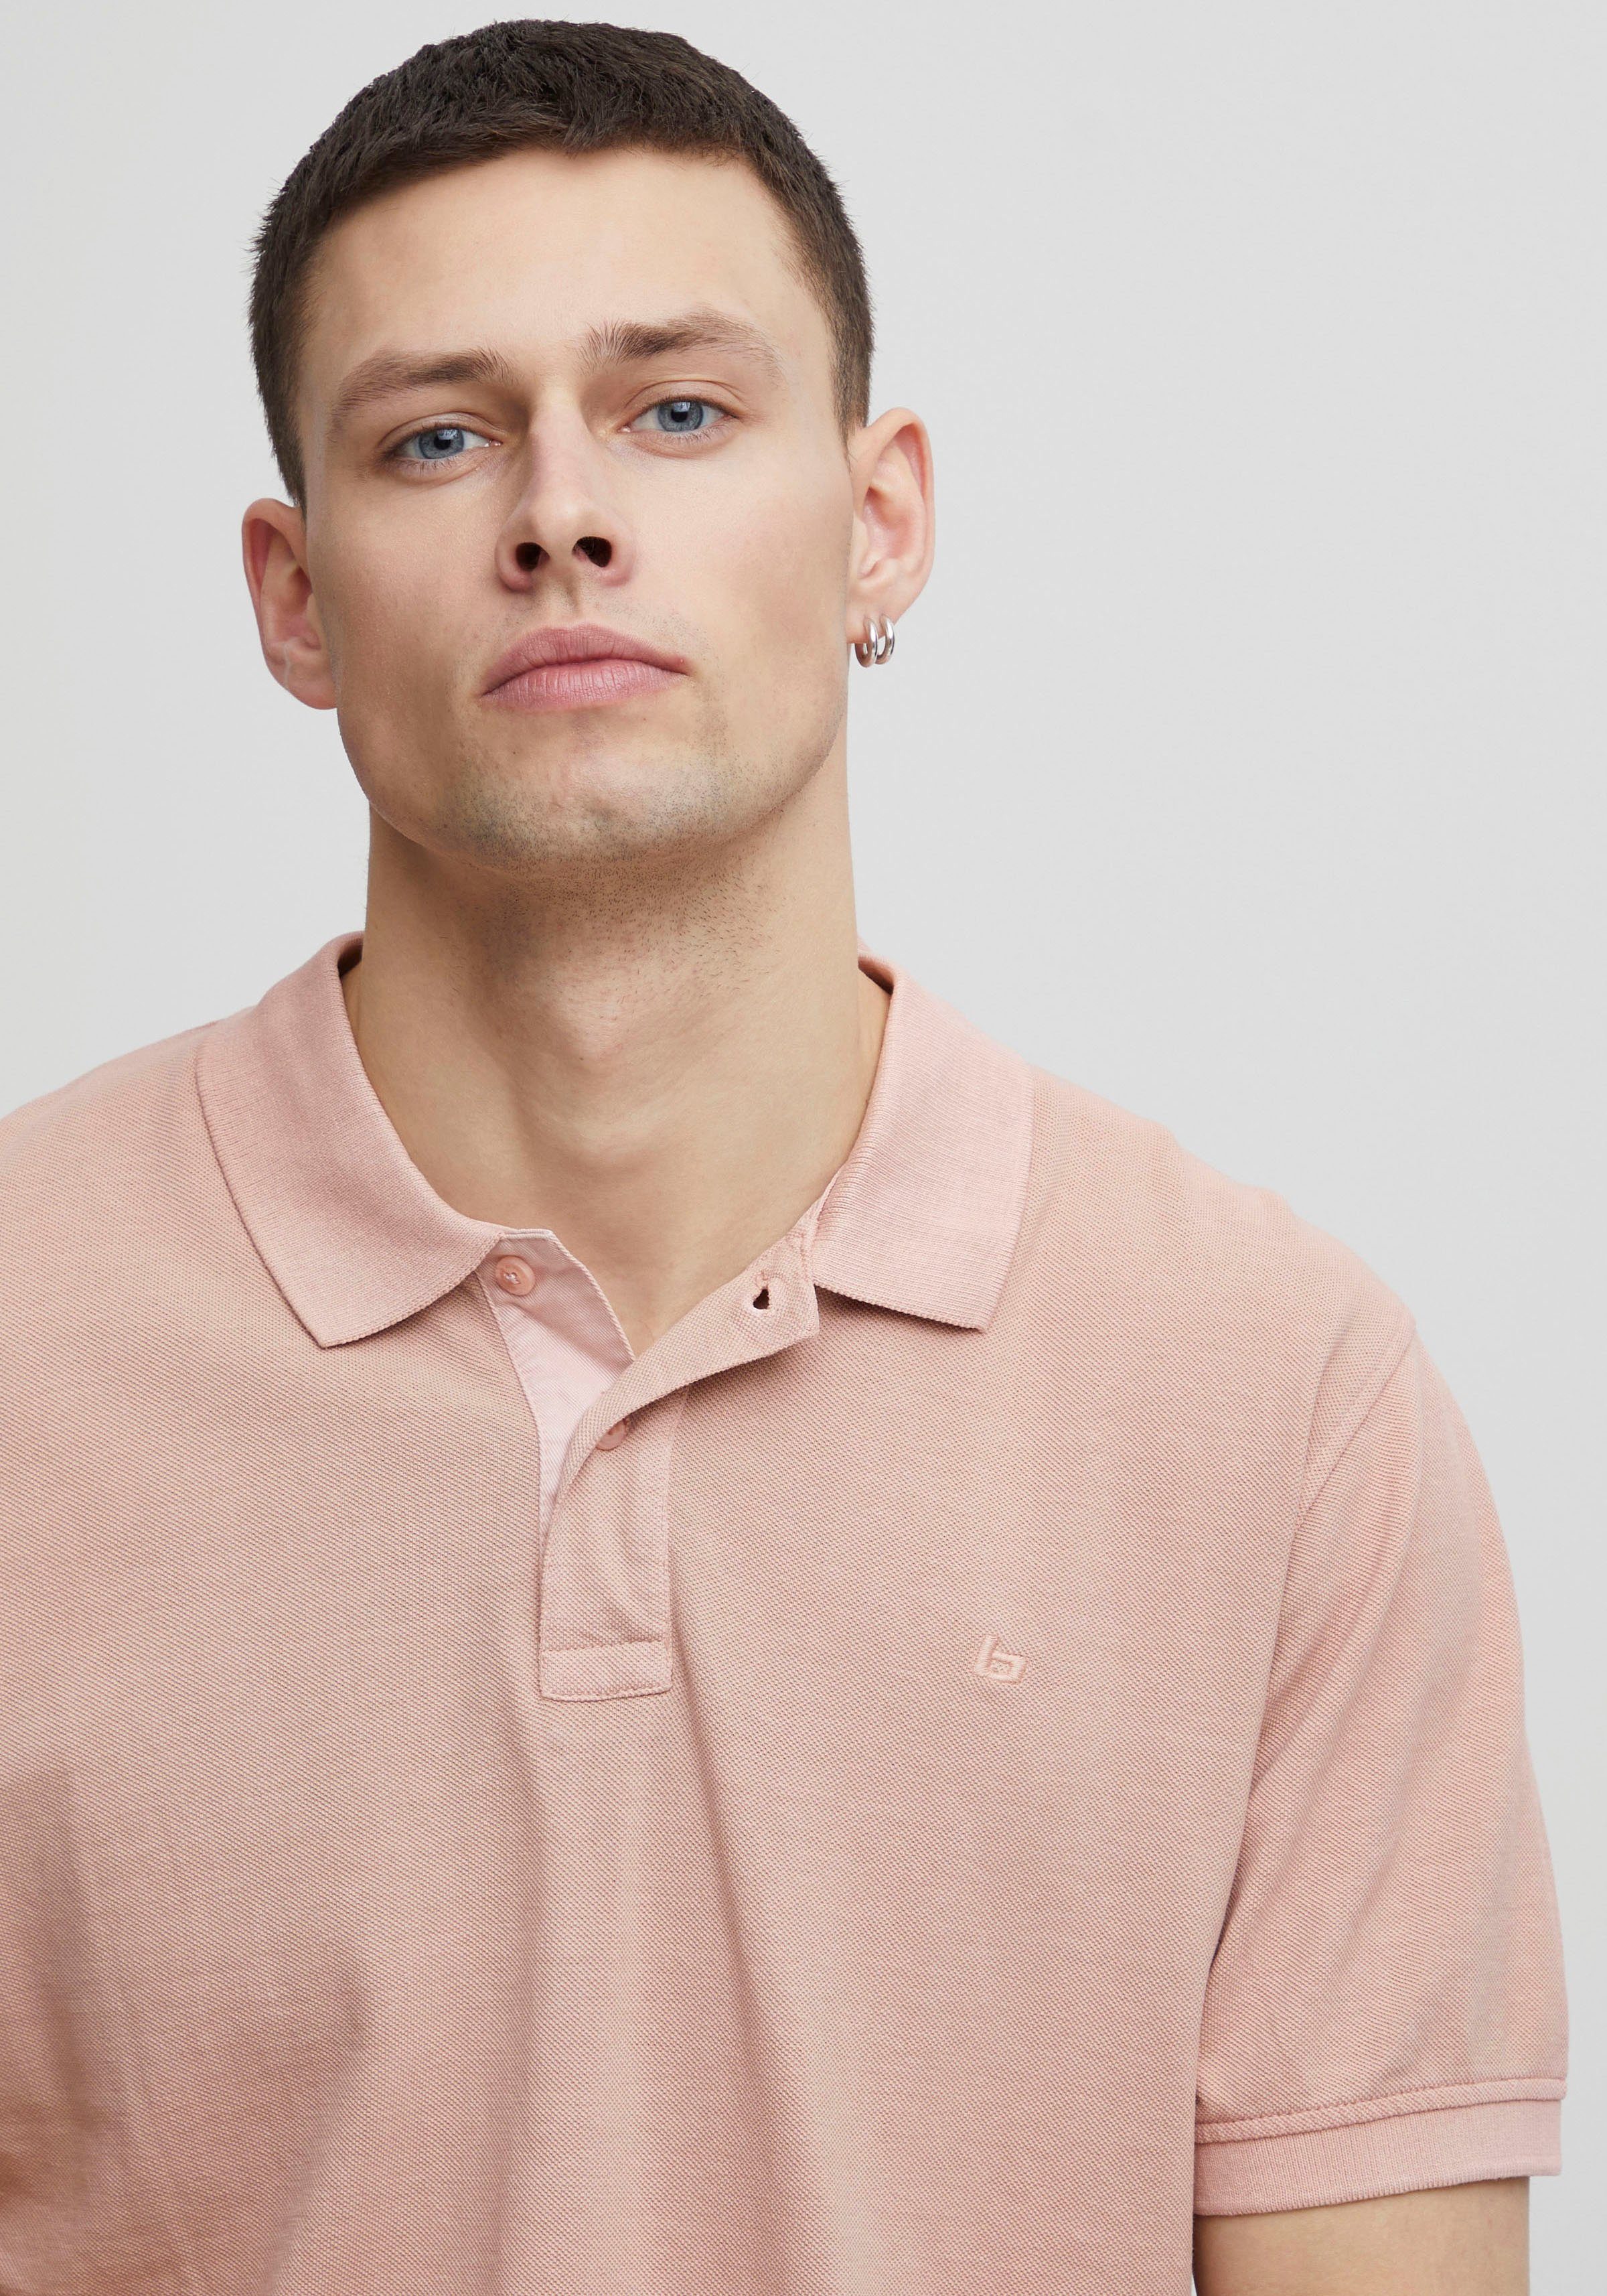 BL-Poloshirt pink Poloshirt Blend